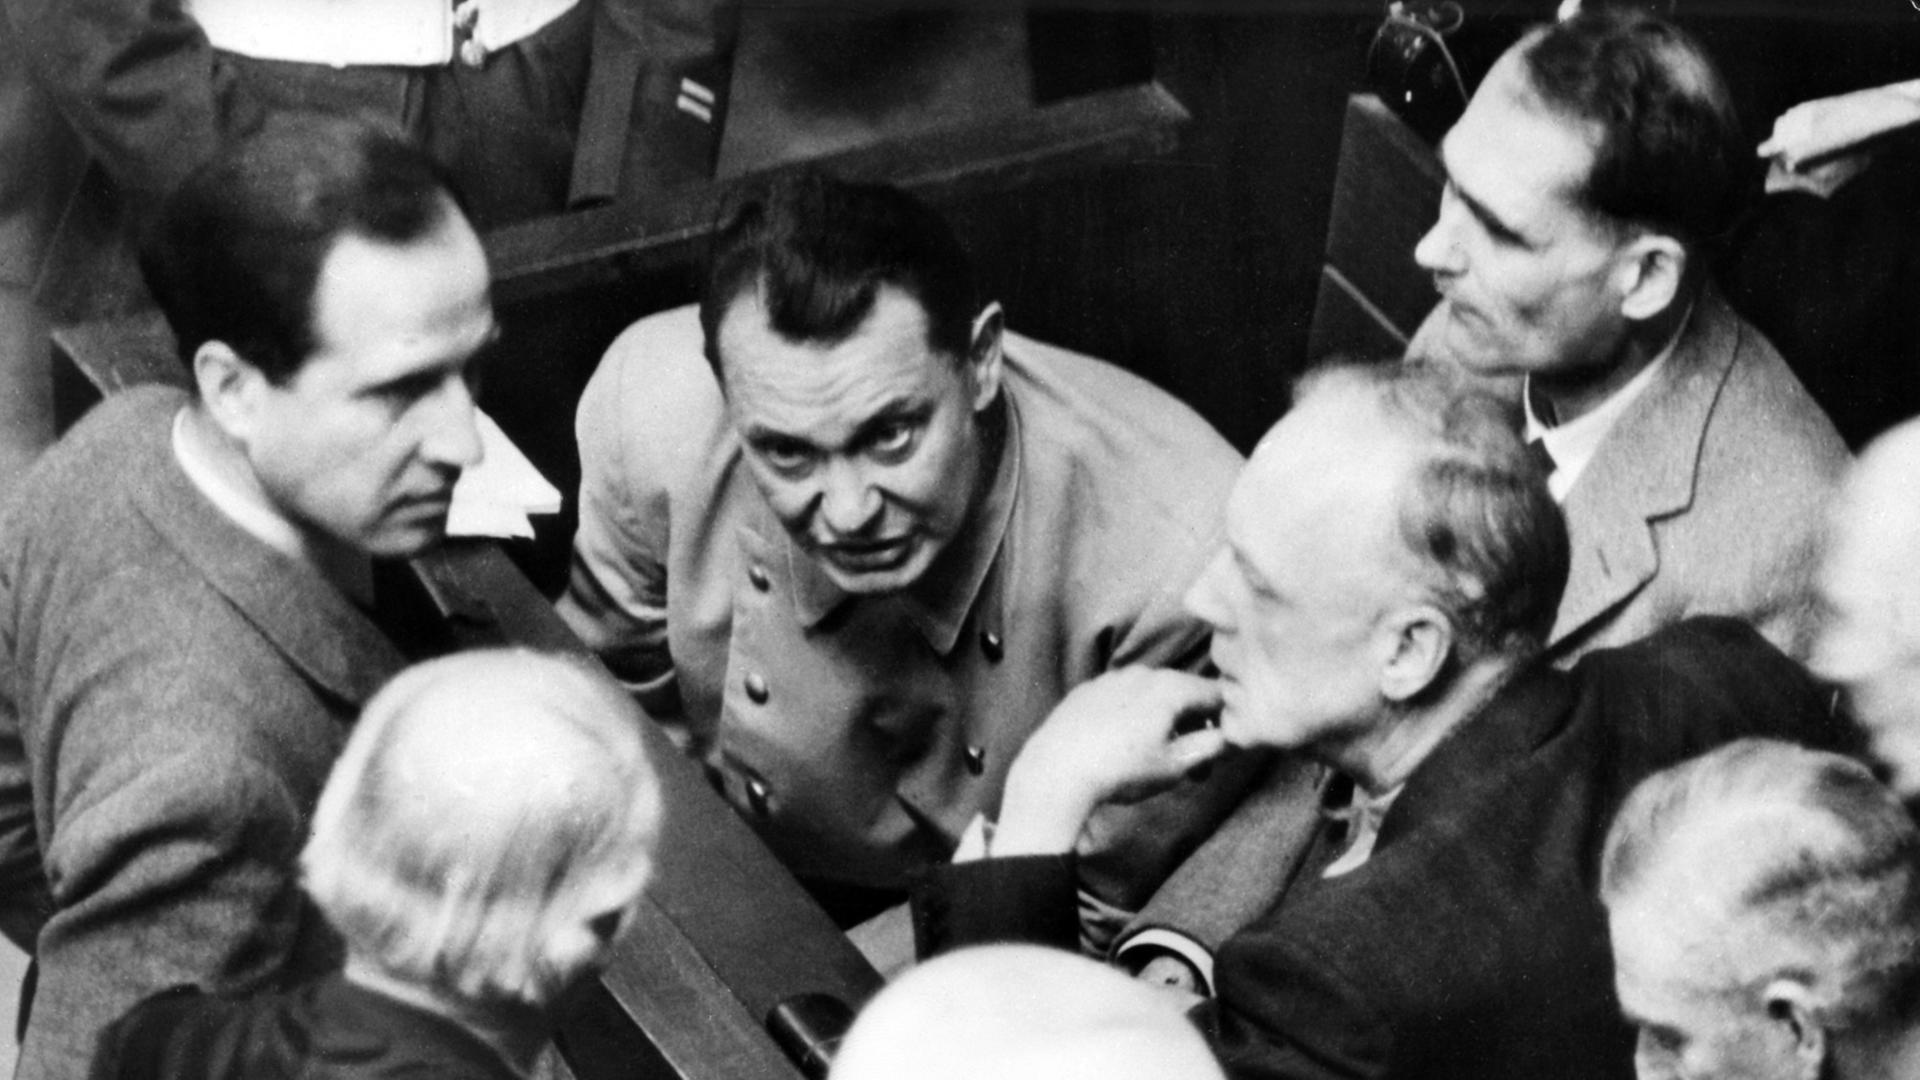 Die Hauptangeklagten Hermann Göring, Rudolf Heß und Joachim von Ribbentrop auf der Anklagebank während der Nürnberger Hauptkriegsverbrecherprozesse am 13.02.1946 in Nürnberg.